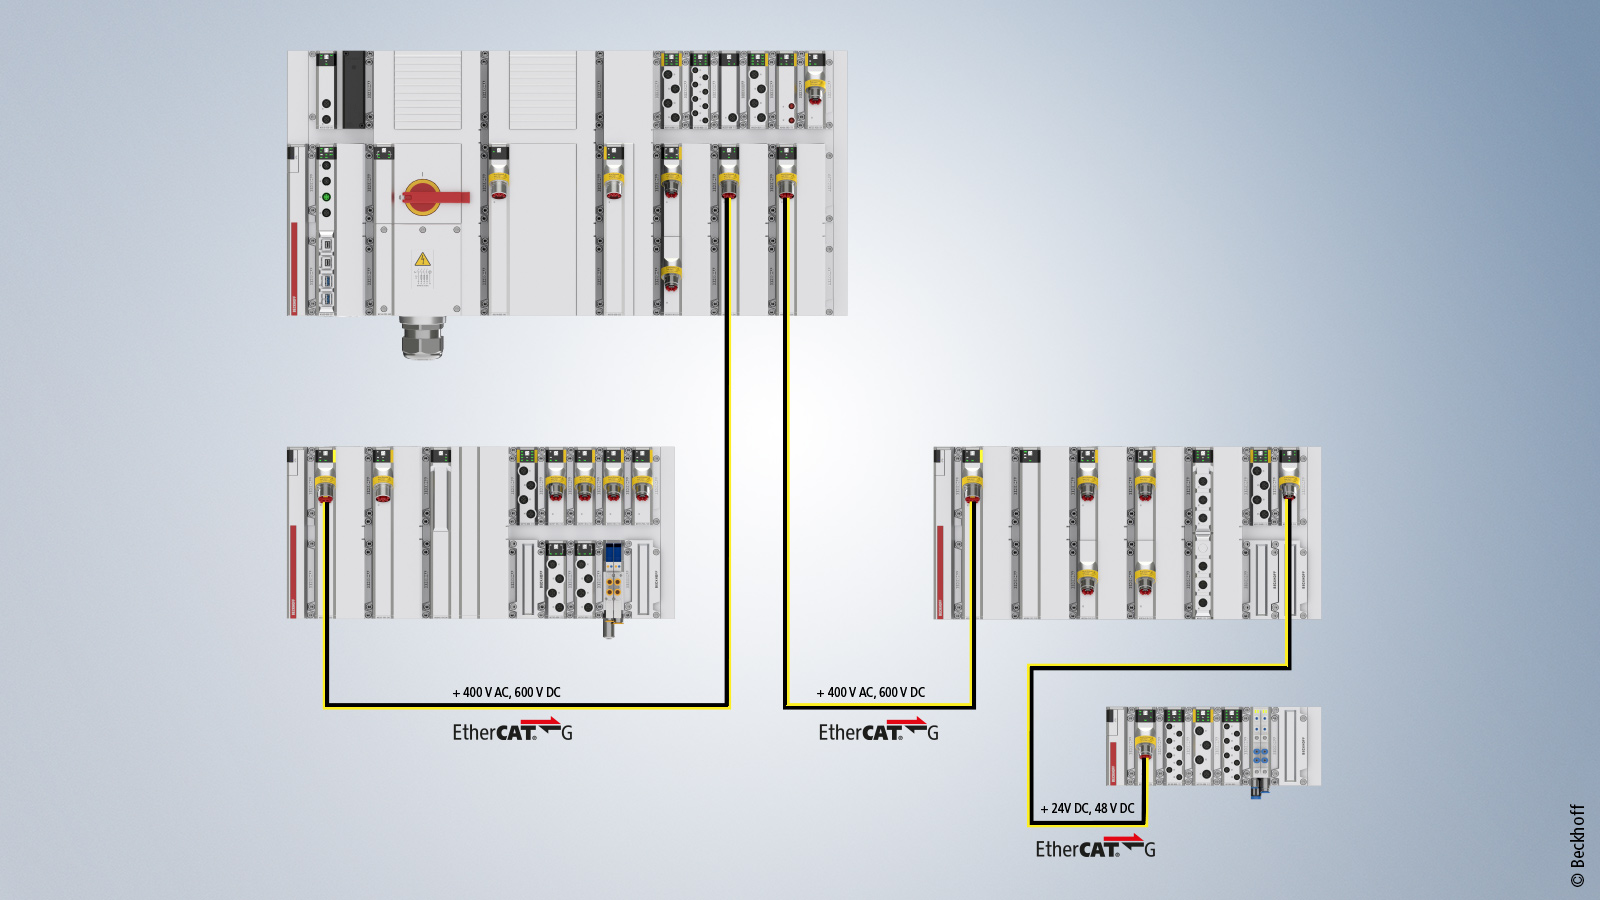 通过 MX-System 和 EtherCAT，传统的集中式控制方式变成了分散控制的分布式控制柜。